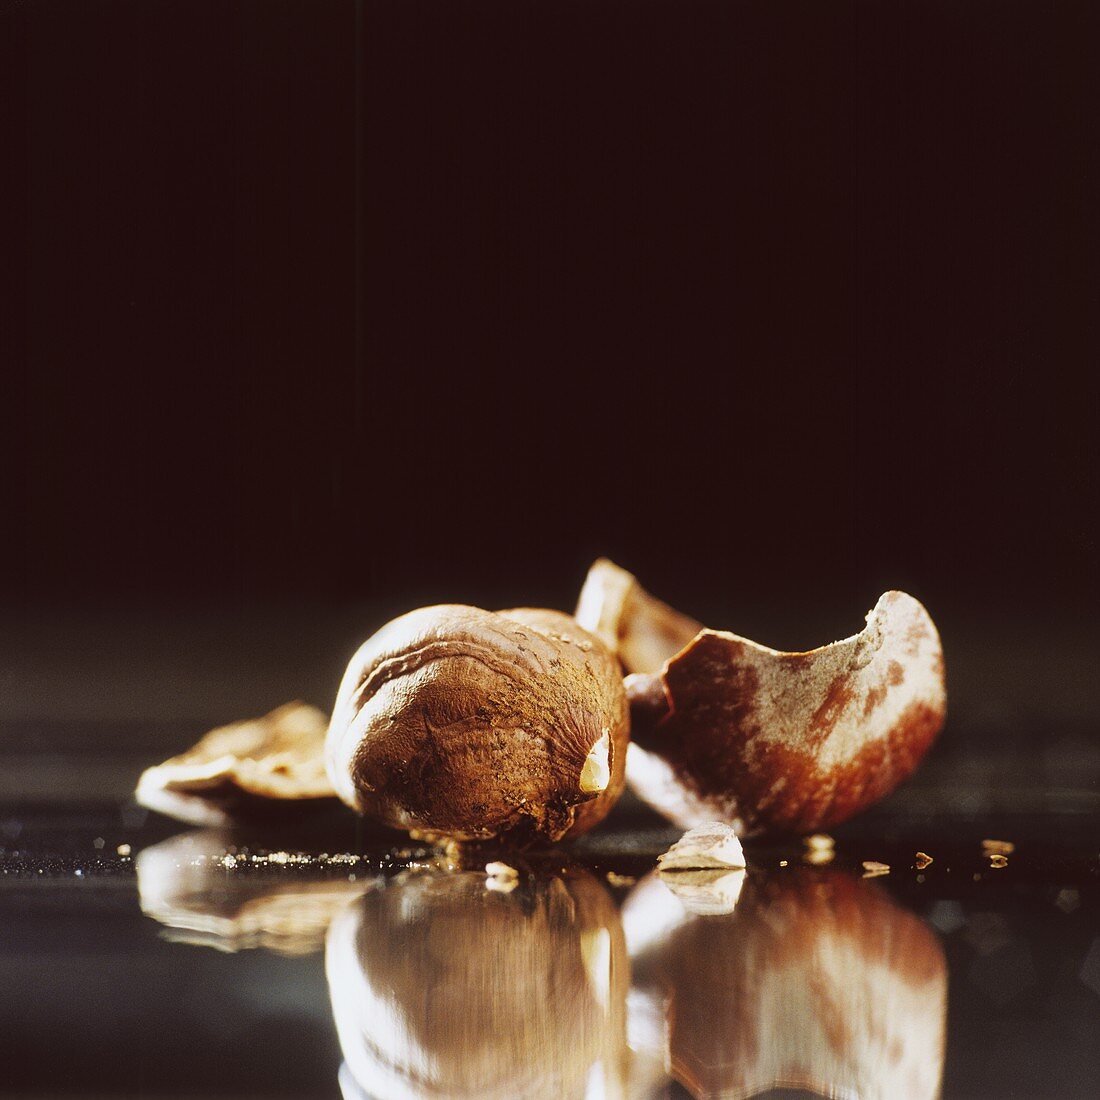 A shelled hazelnut and shell